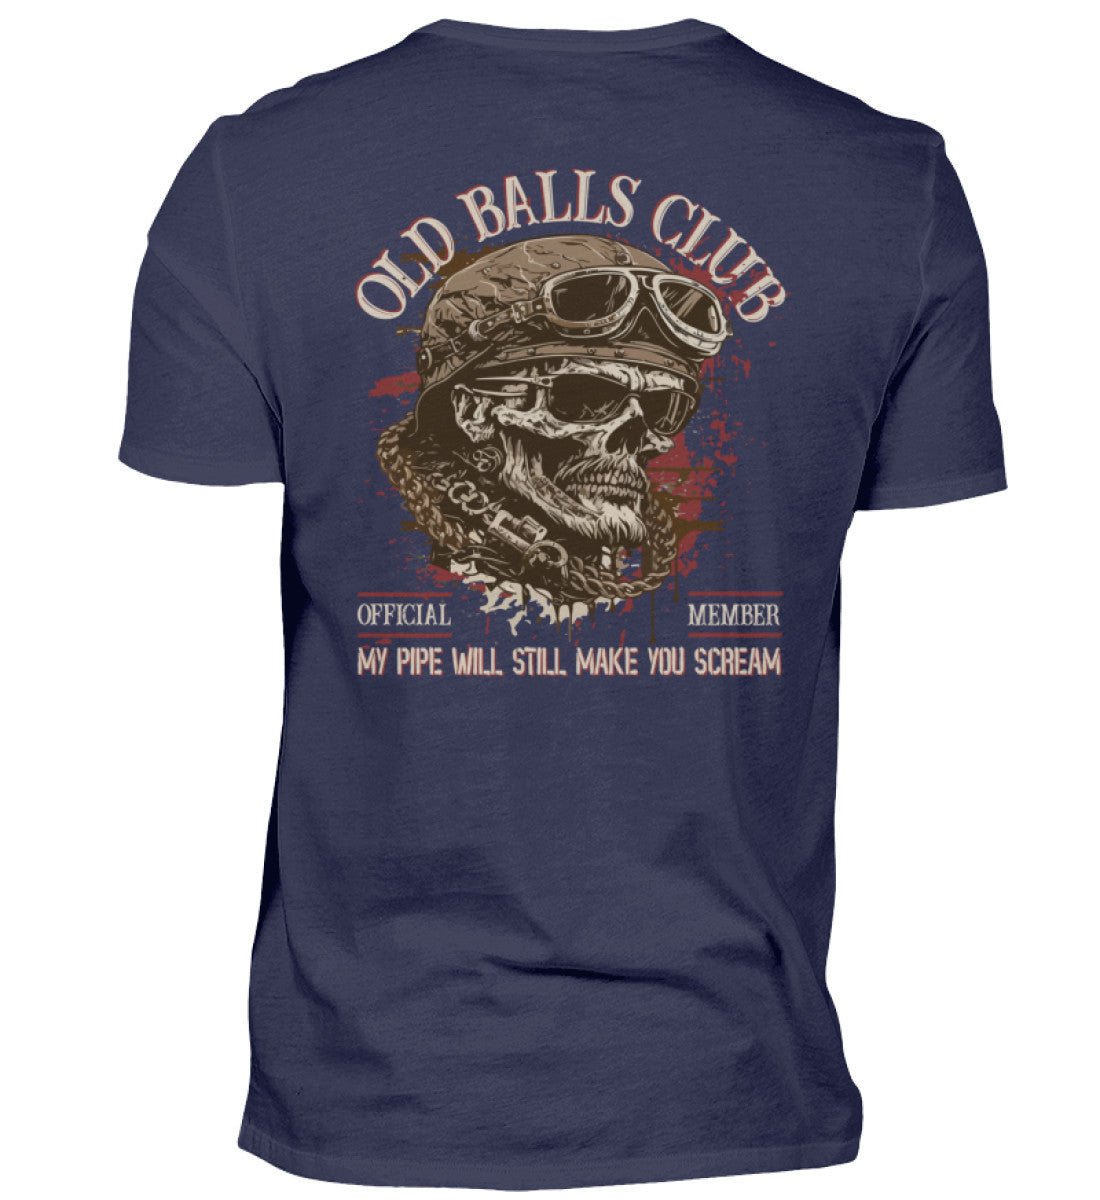 Ein Biker T-Shirt für Motorradfahrer von Wingbikers mit dem Aufdruck, Old Balls Club - My Pipe Will Still Make You Scream, als Back Print, in navy blau.